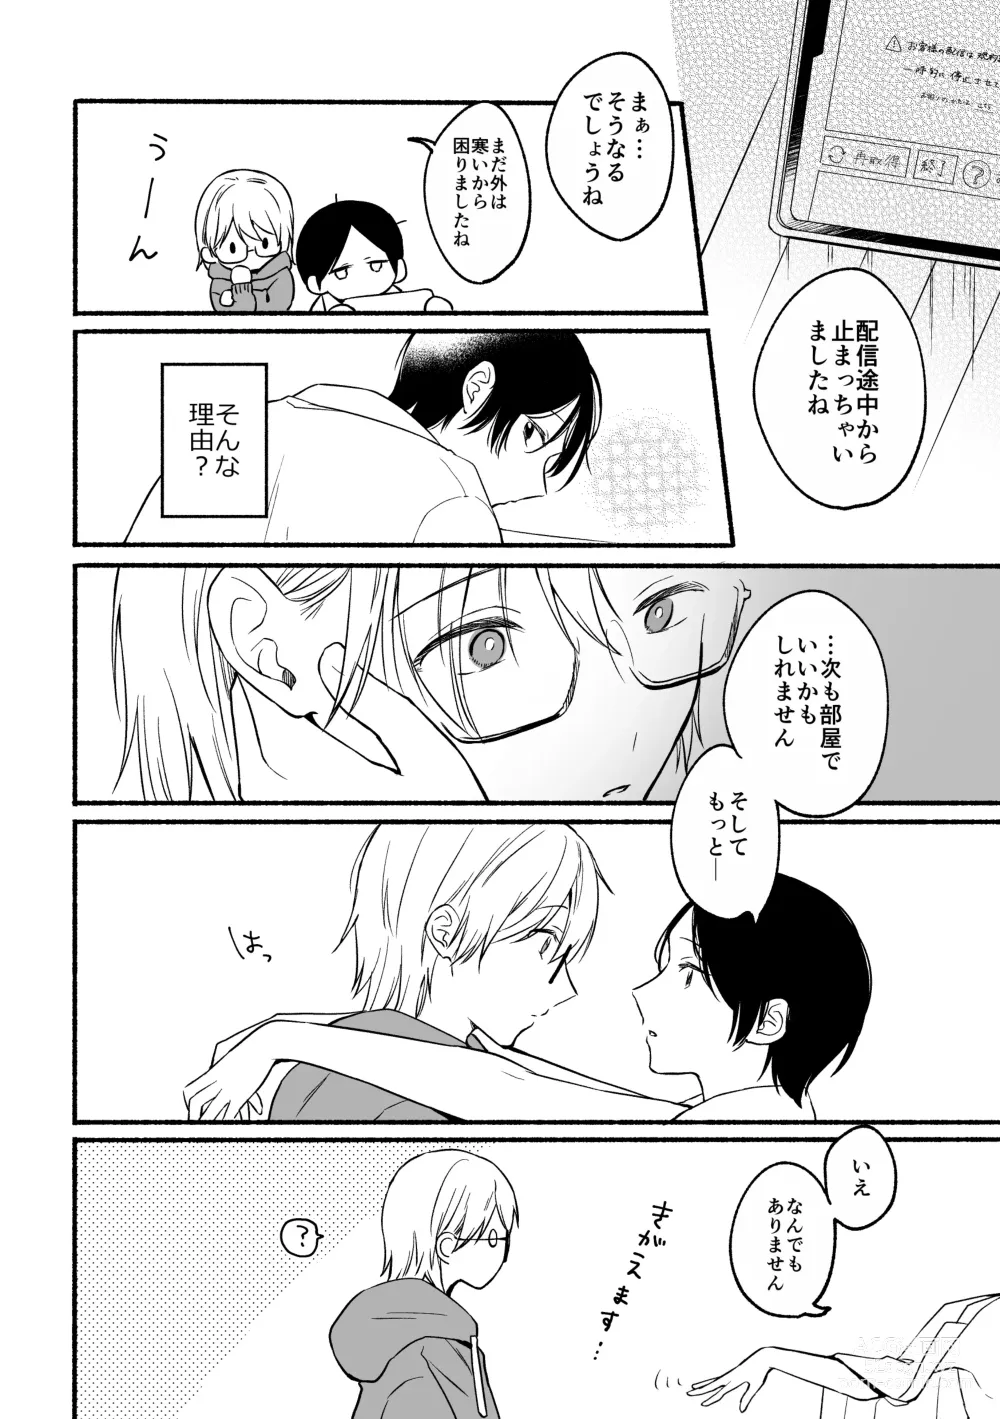 Page 24 of doujinshi Seijinkou Mangakka, Hamedori Haishin Ganbarimasu.